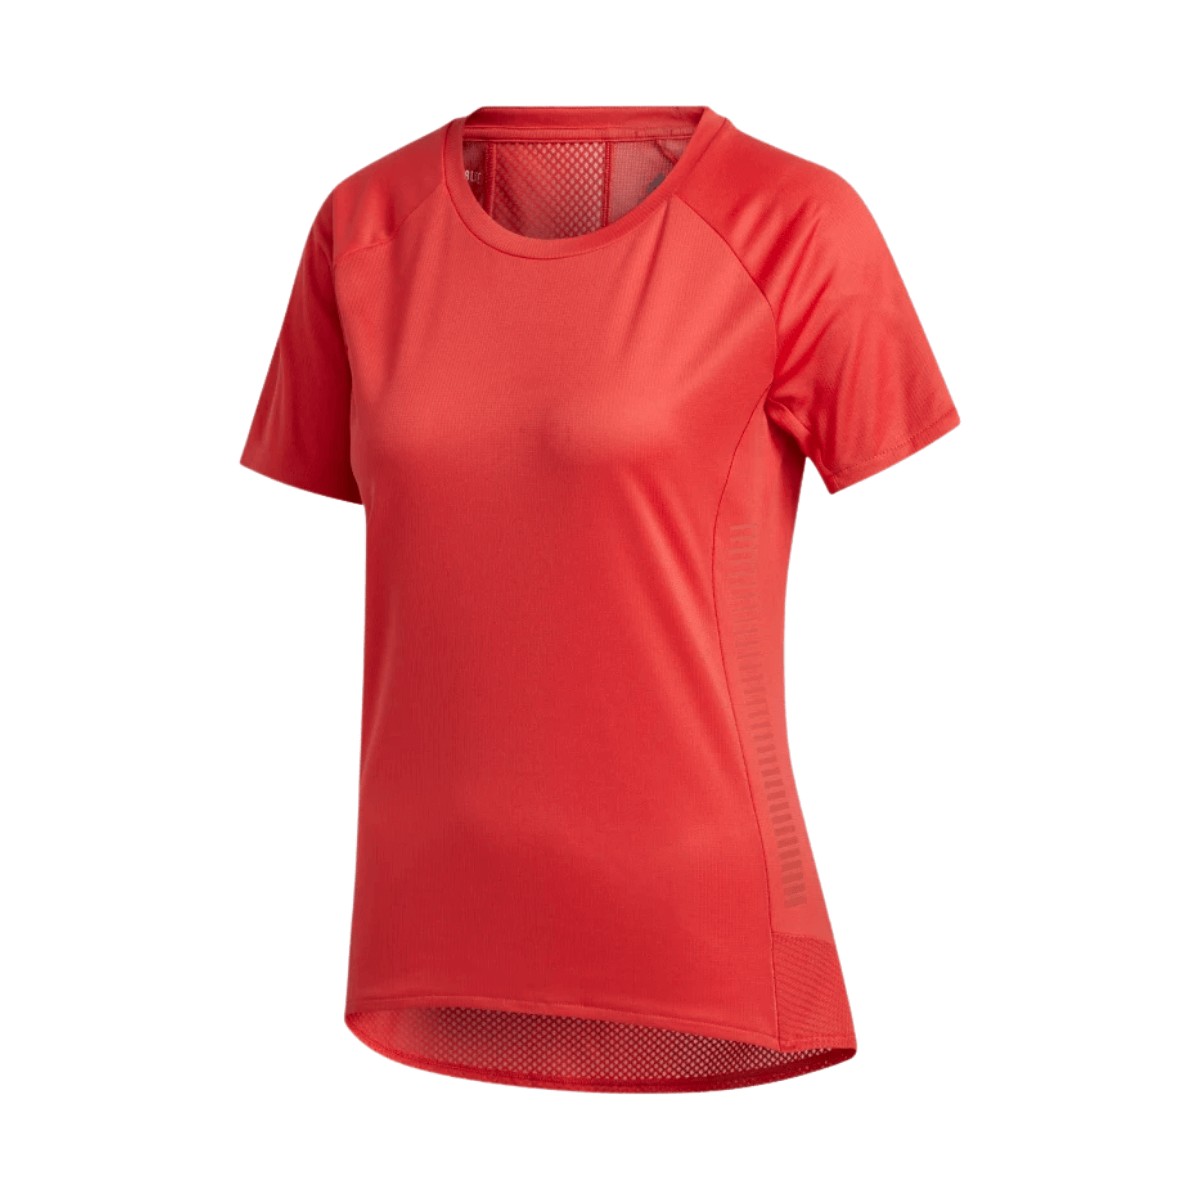 Adidas Running T-shirt Rose Femme